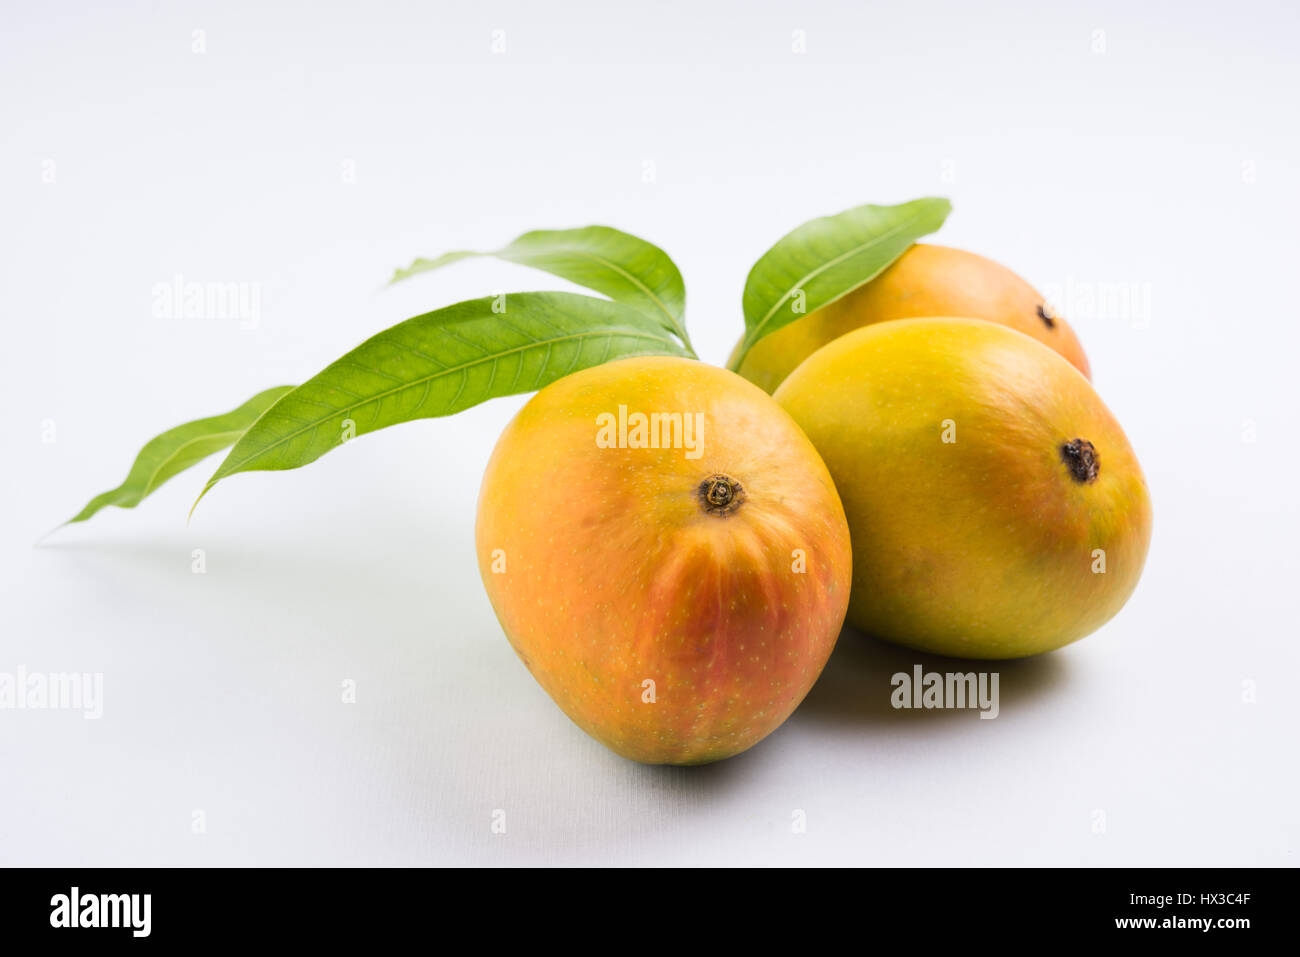 König der Früchte; Alphonso gelbe Mango Frucht Duo mit Stielen und grünen Blättern isolierten auf weißen Hintergrund, ein Produkt der Konkan aus Maharashtra - Indien Stockfoto